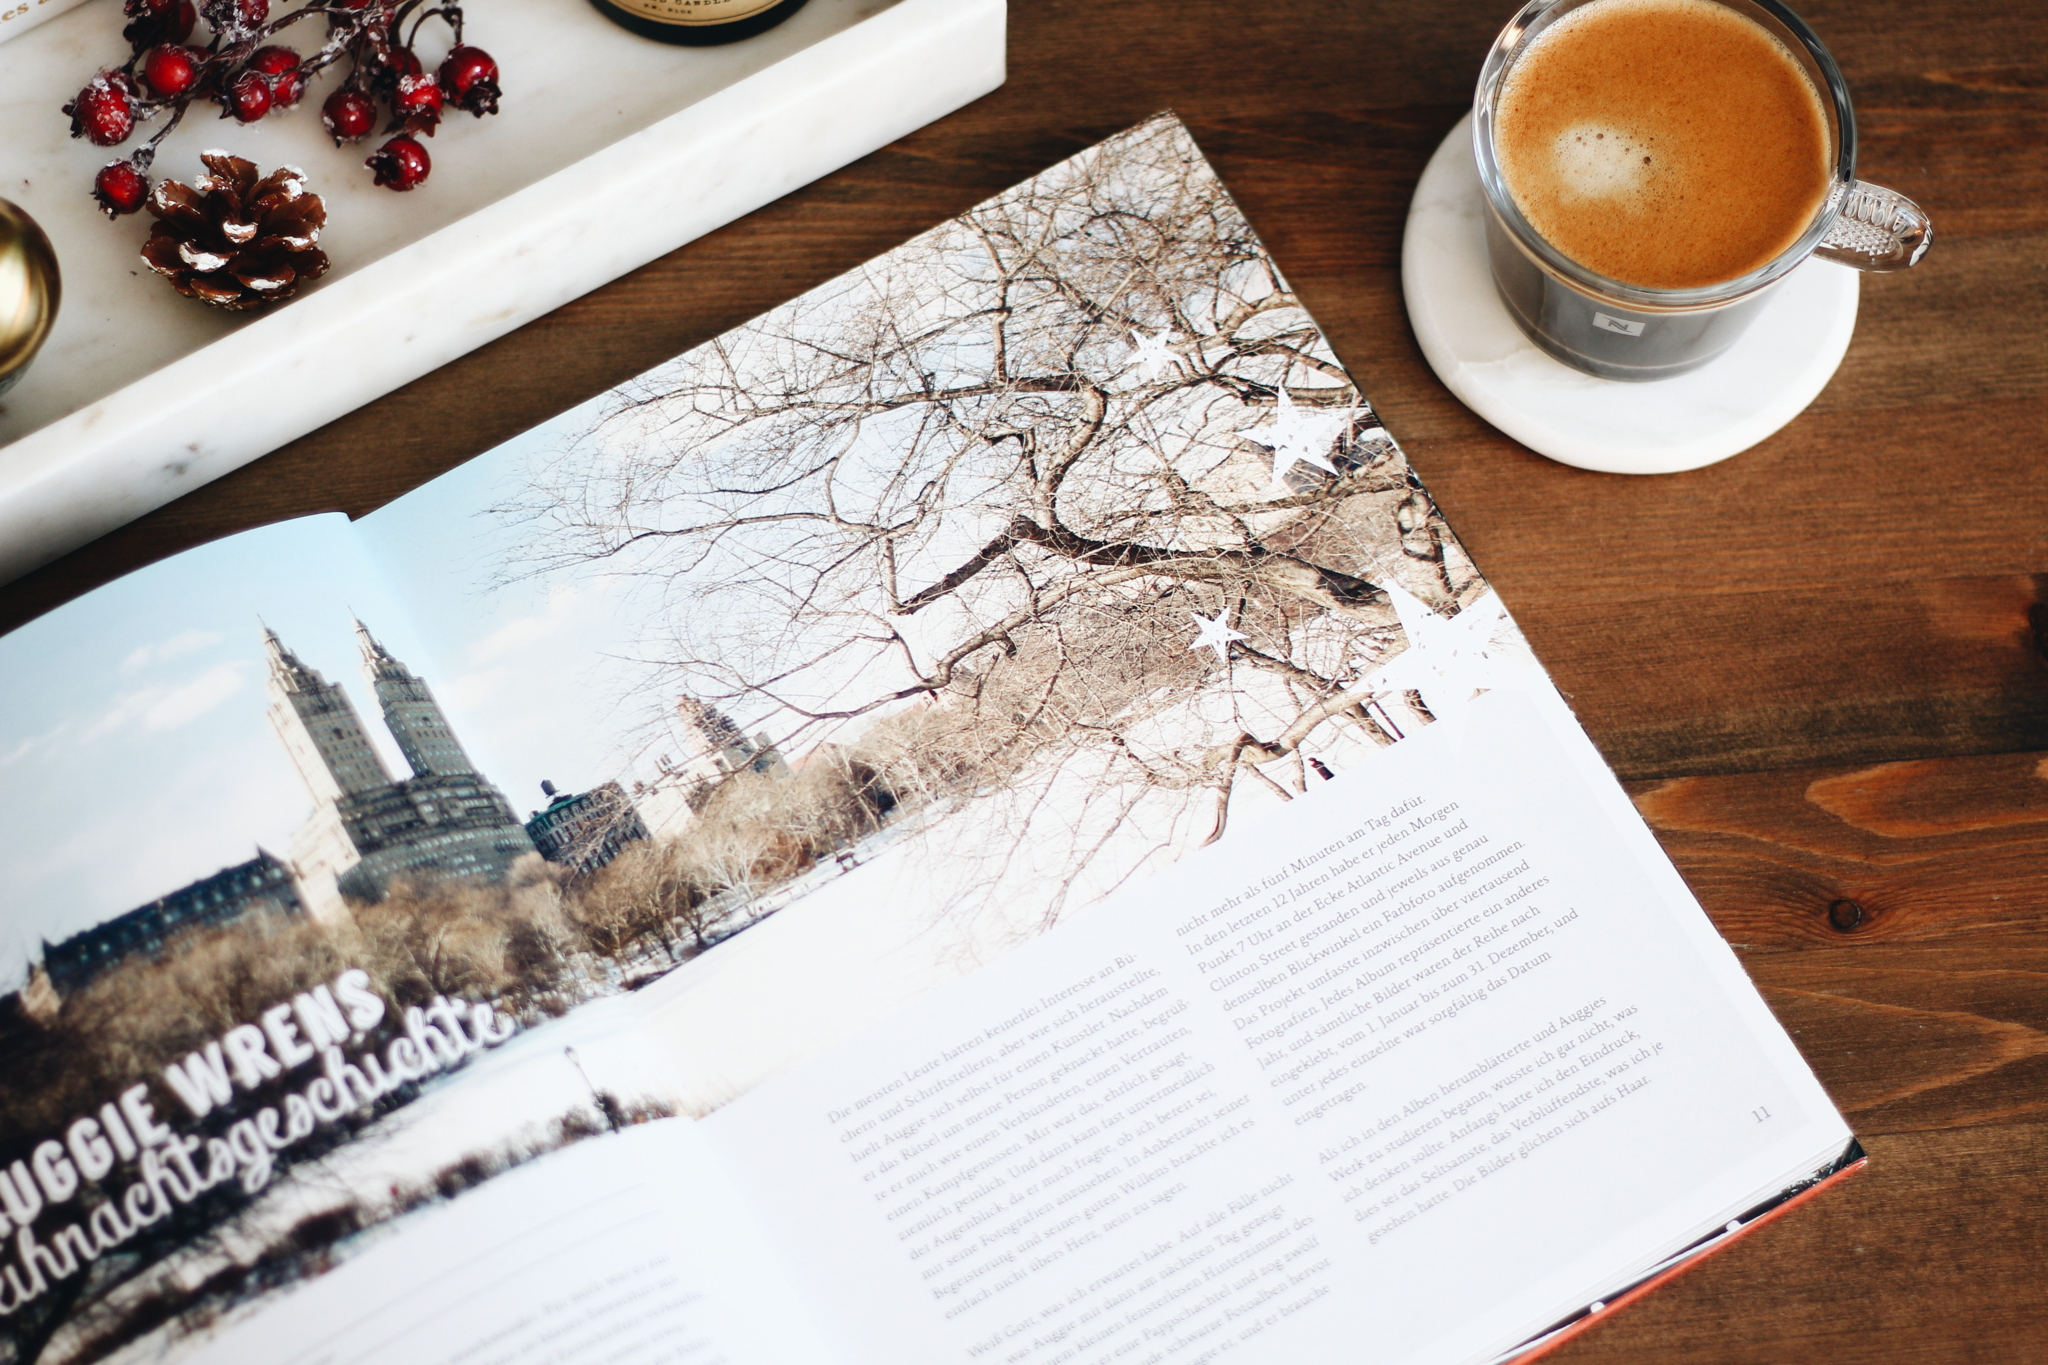 Blick ins Buch - Kochbuch-Empfehlung: "New York Christmas: Rezepte und Geschichten" - ein Muss für alle New York Fans - Lifestyle Blog Leipzig